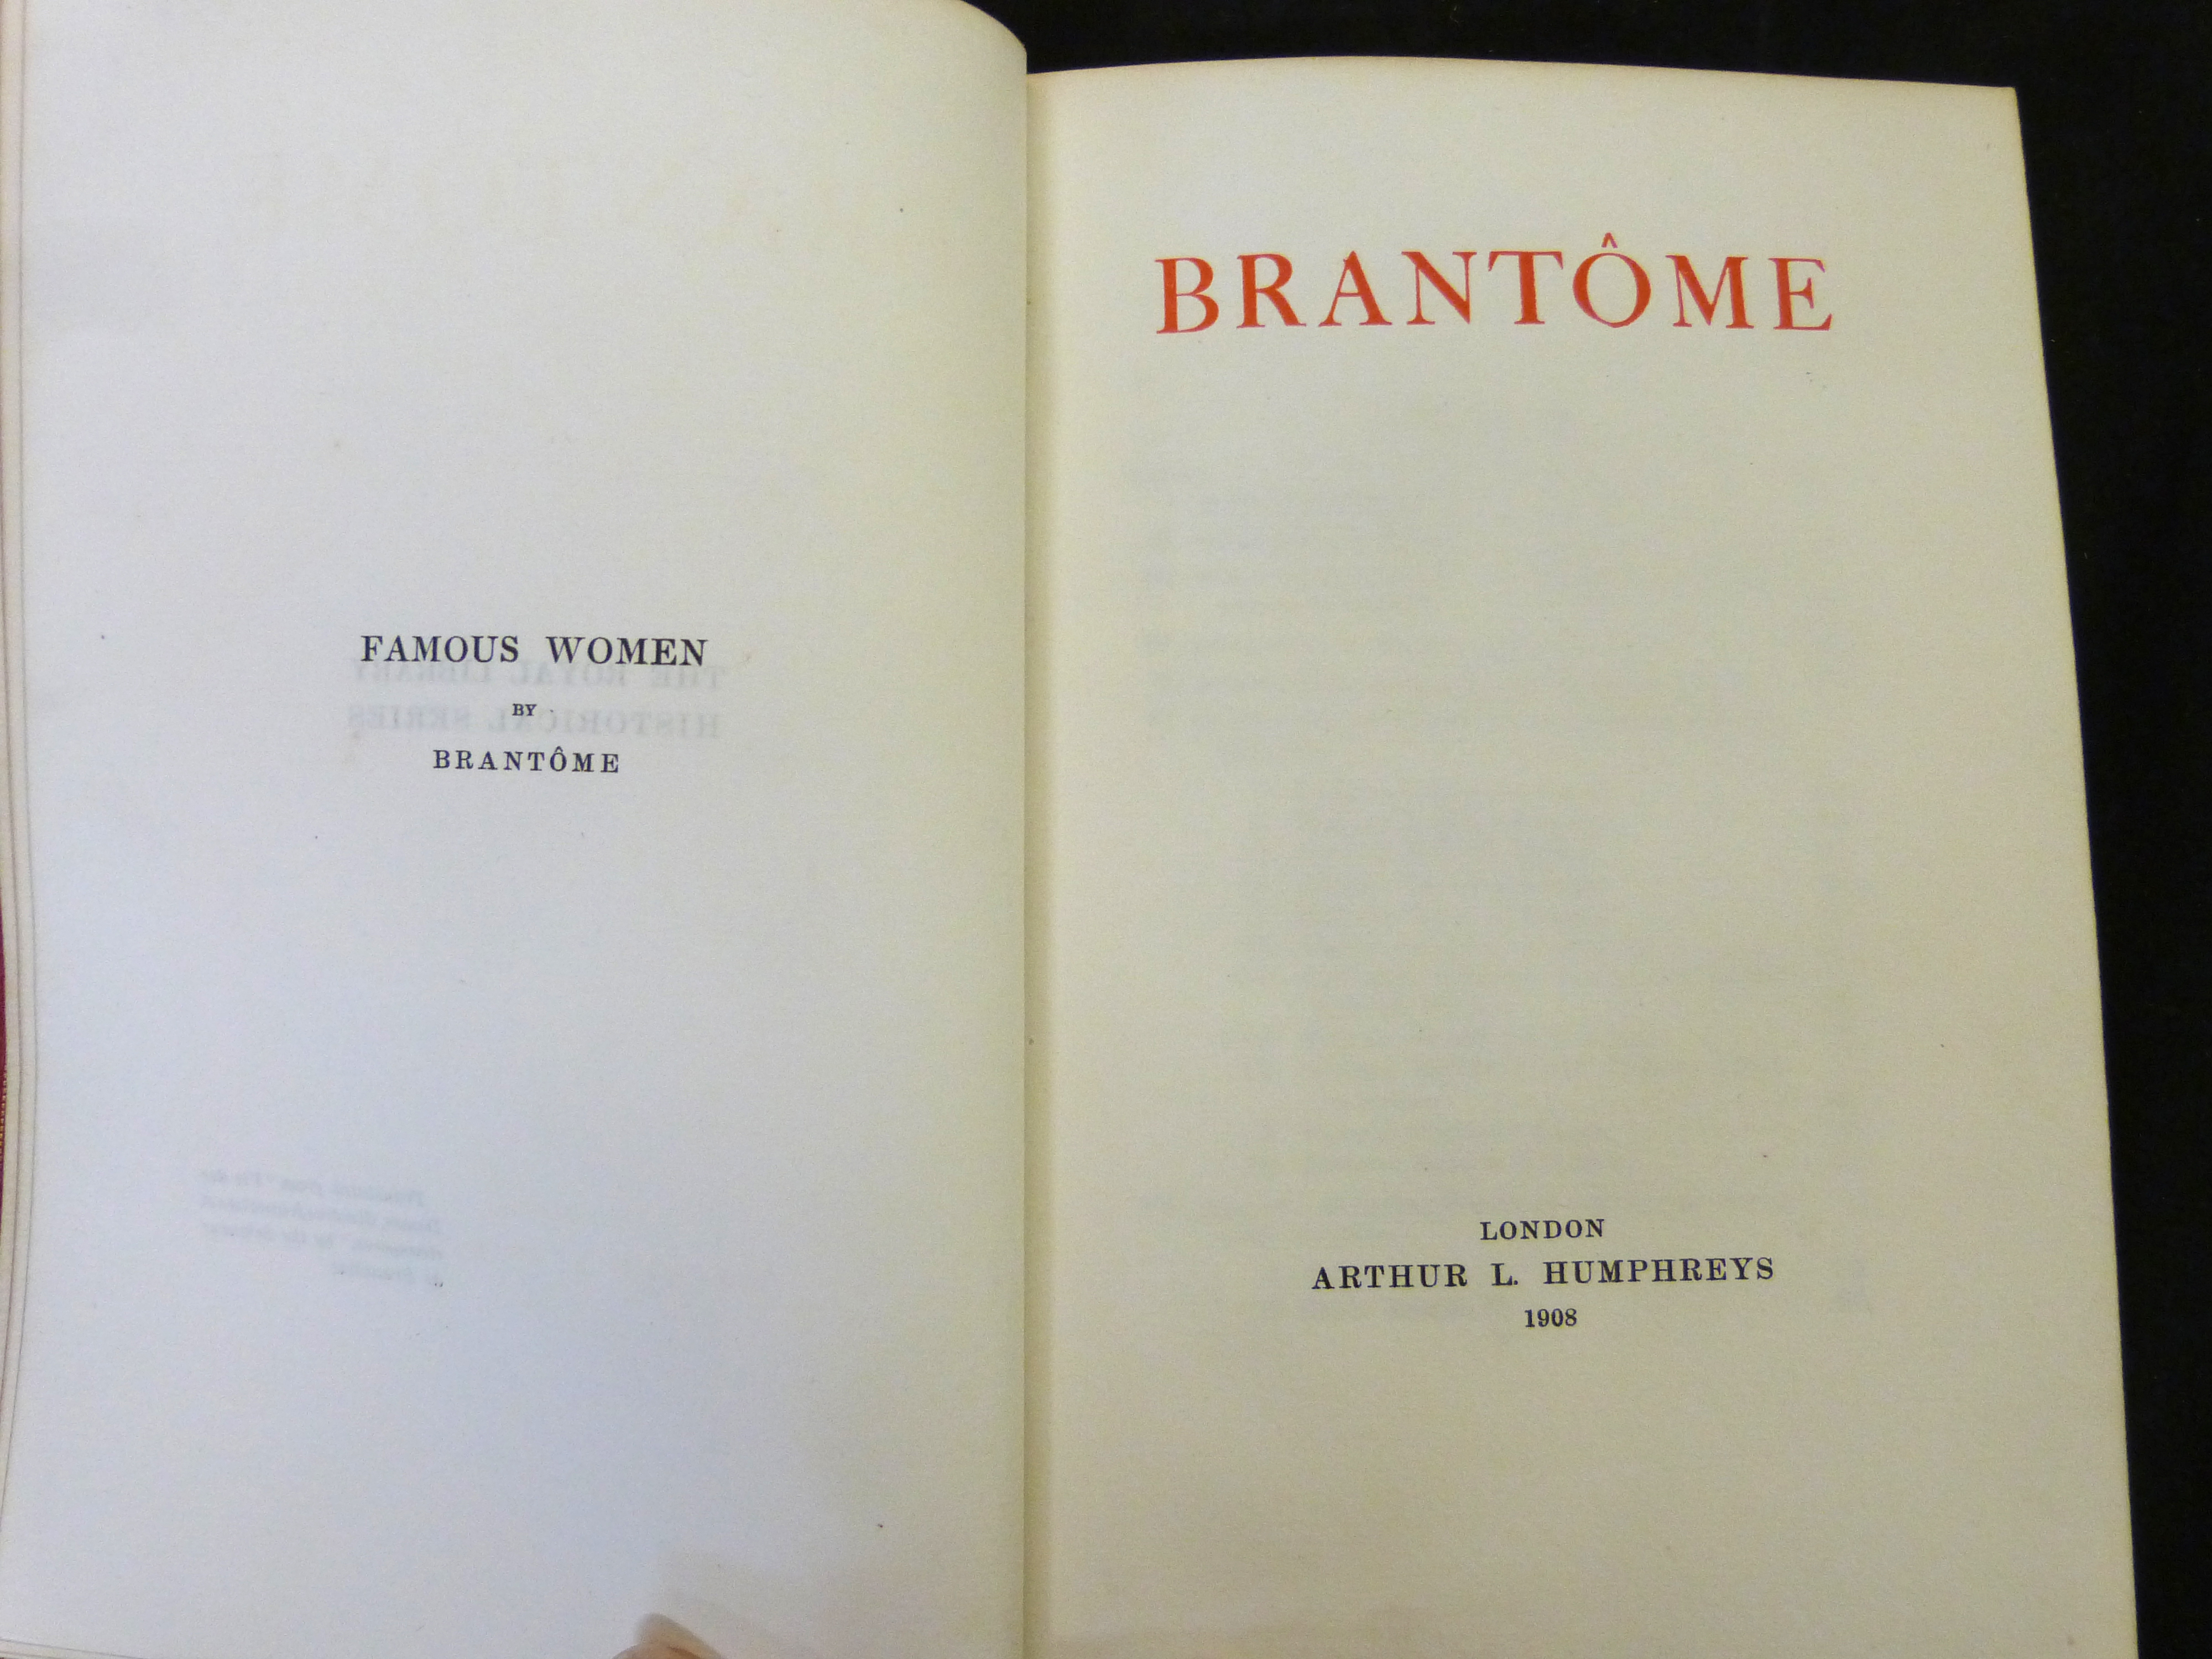 PIERRE DE BOURDEILLE SEIGNEUR DE BRANTOME: FAMOUS WOMEN, London, Arthur L Humphreys, 1908, 1st